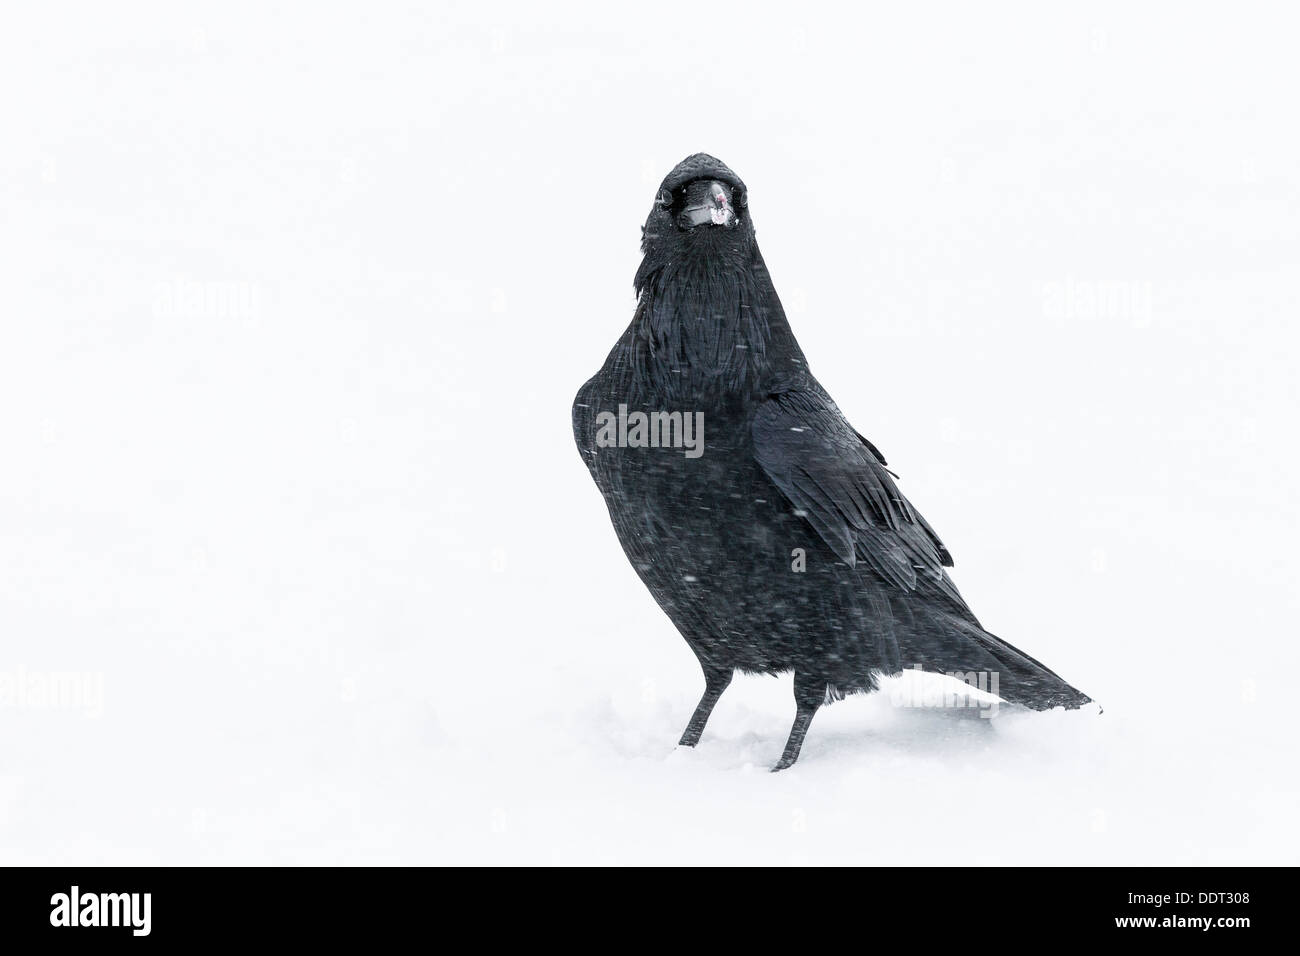 Raven in snow Stock Photo